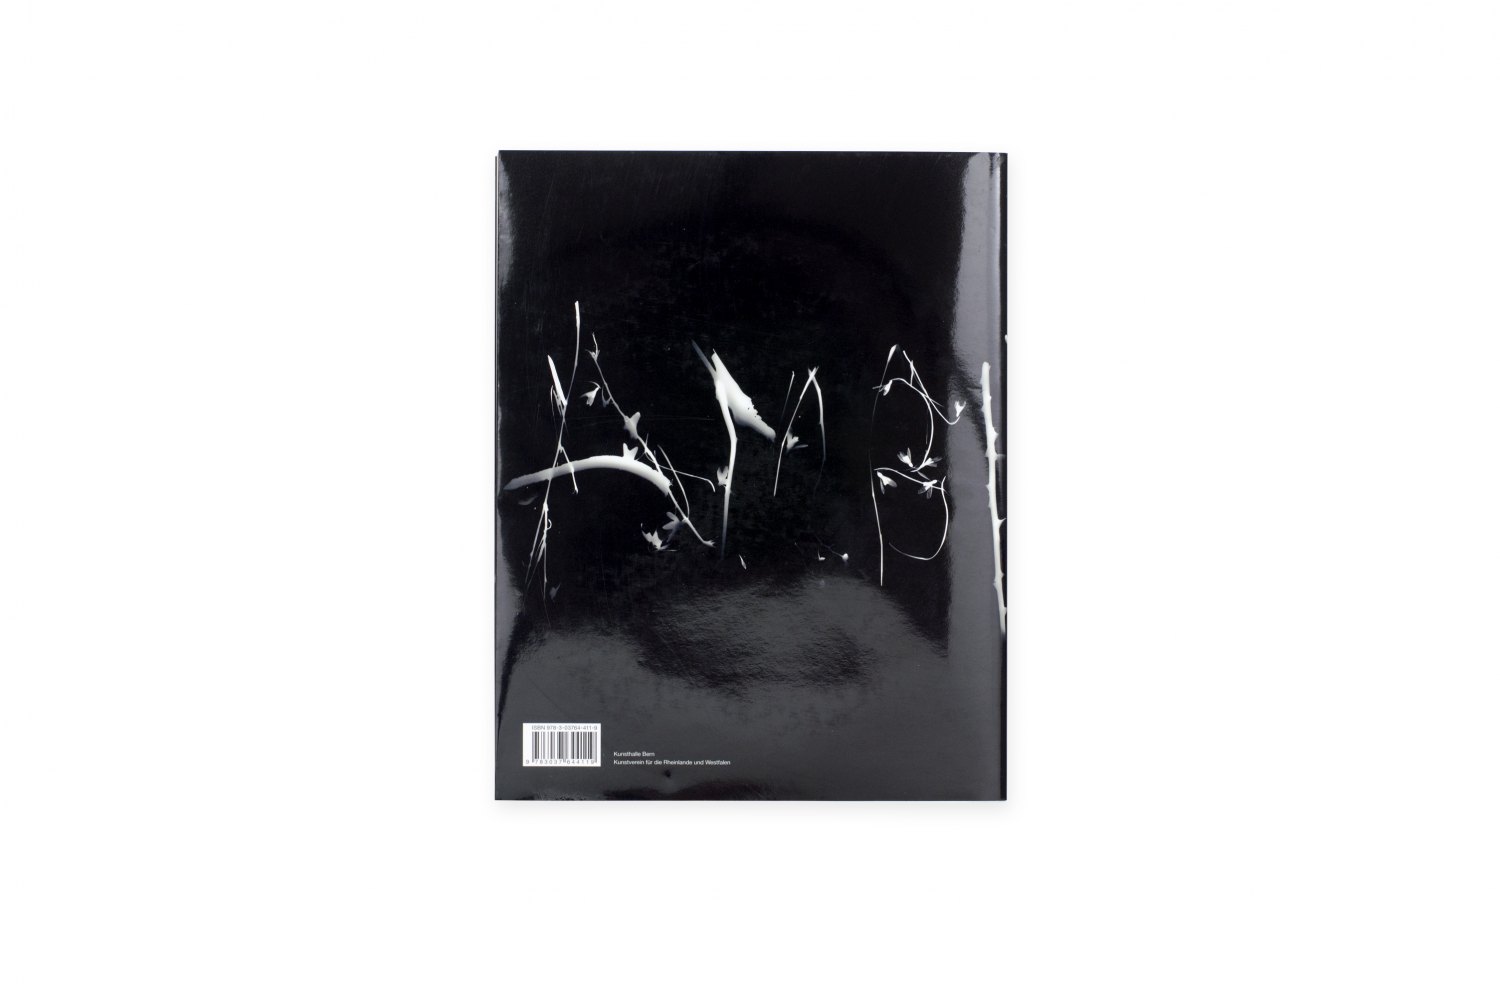 Josephine Pryde, The Enjoyment of Photography ed. by André Rottmann et al, Catalogue, Kunstverein für die Rheinlande und Westfalen, Düsseldorf/Bern 2012, 276 p.  ISBN 978-3-03764-411-9